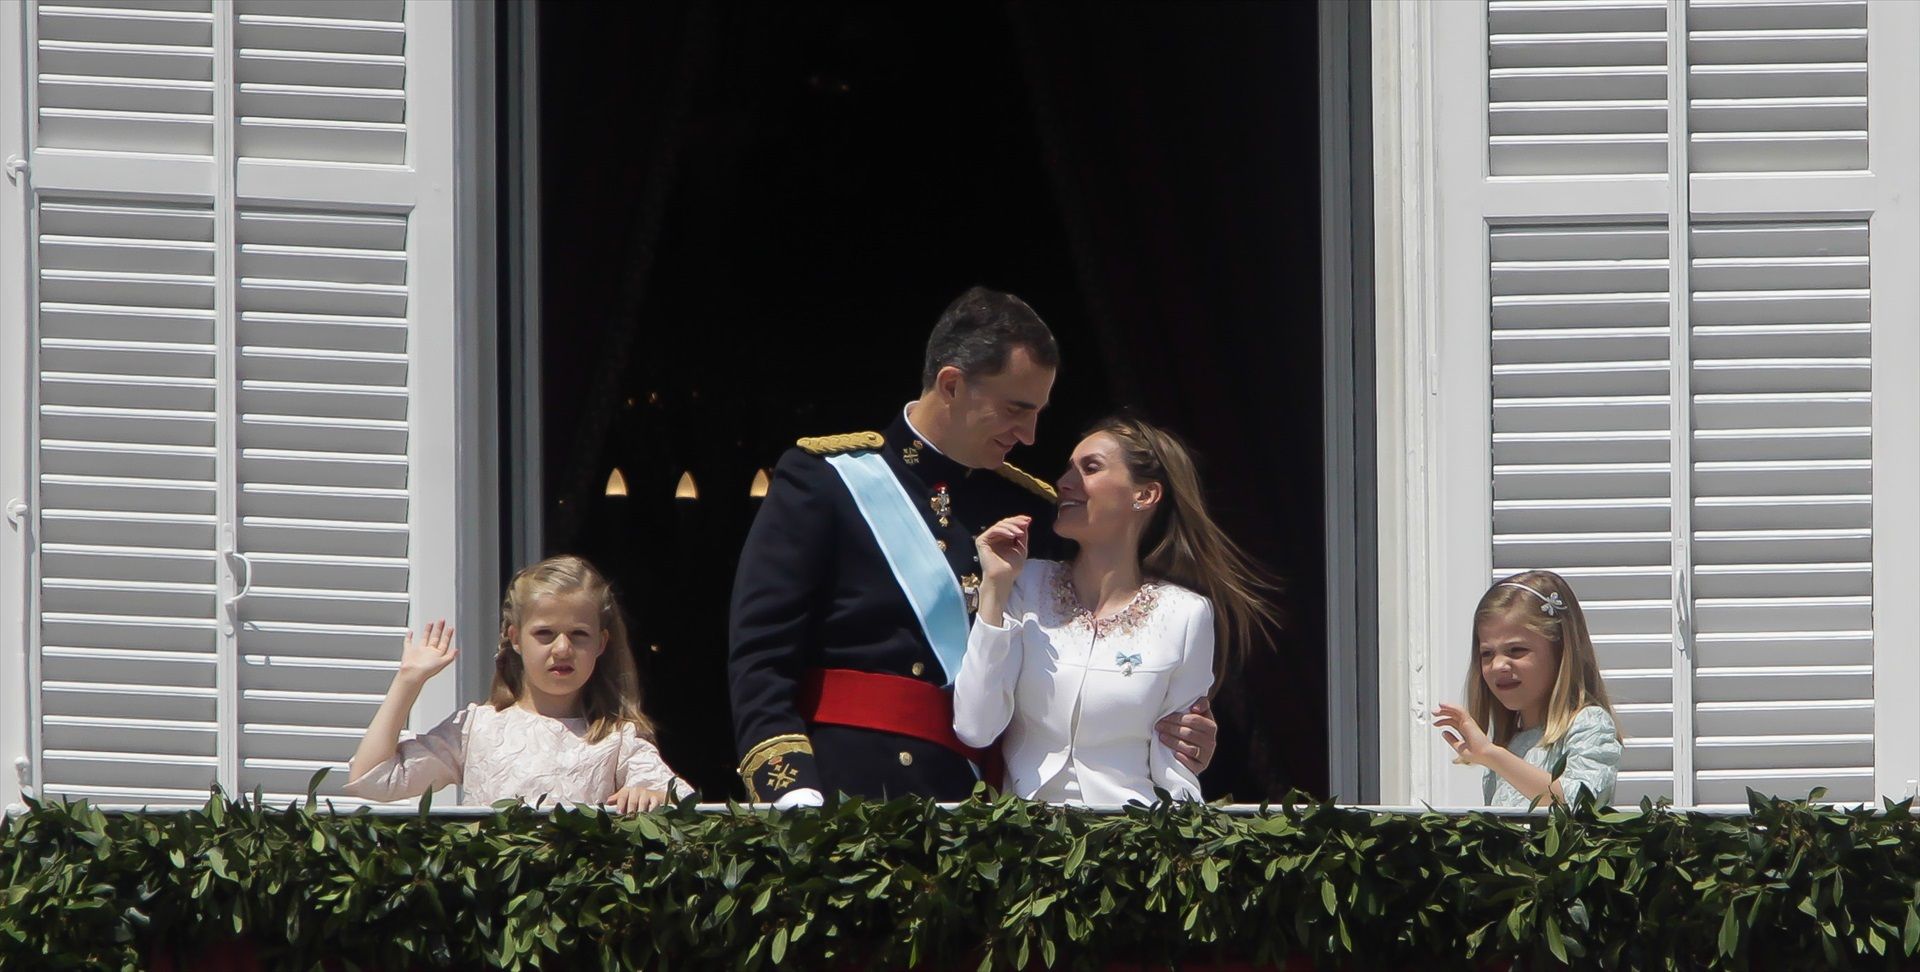 La fiesta de los 10 años de Felipe VI: condecoraciones, almuerzo en el Palacio Real, música...